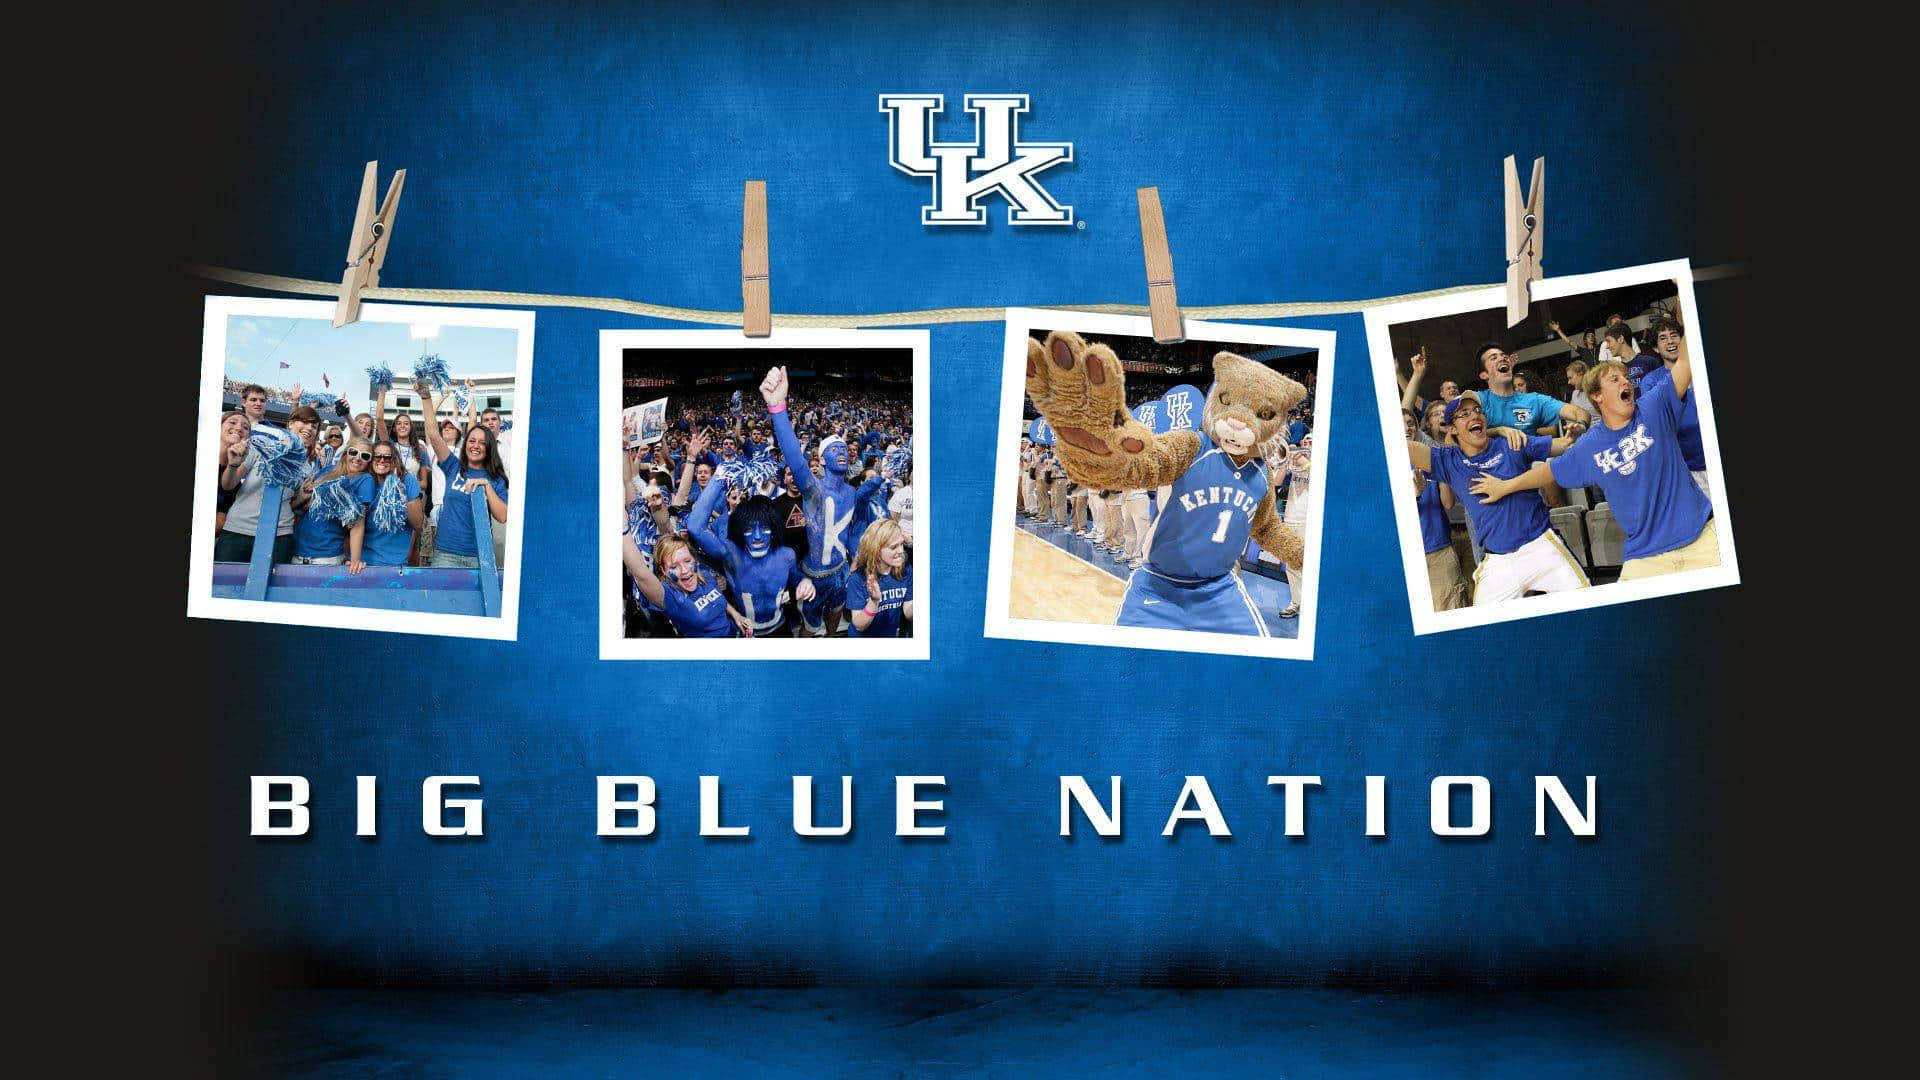 Repræsenterer Kentucky Basketball fans forenede Wallpaper